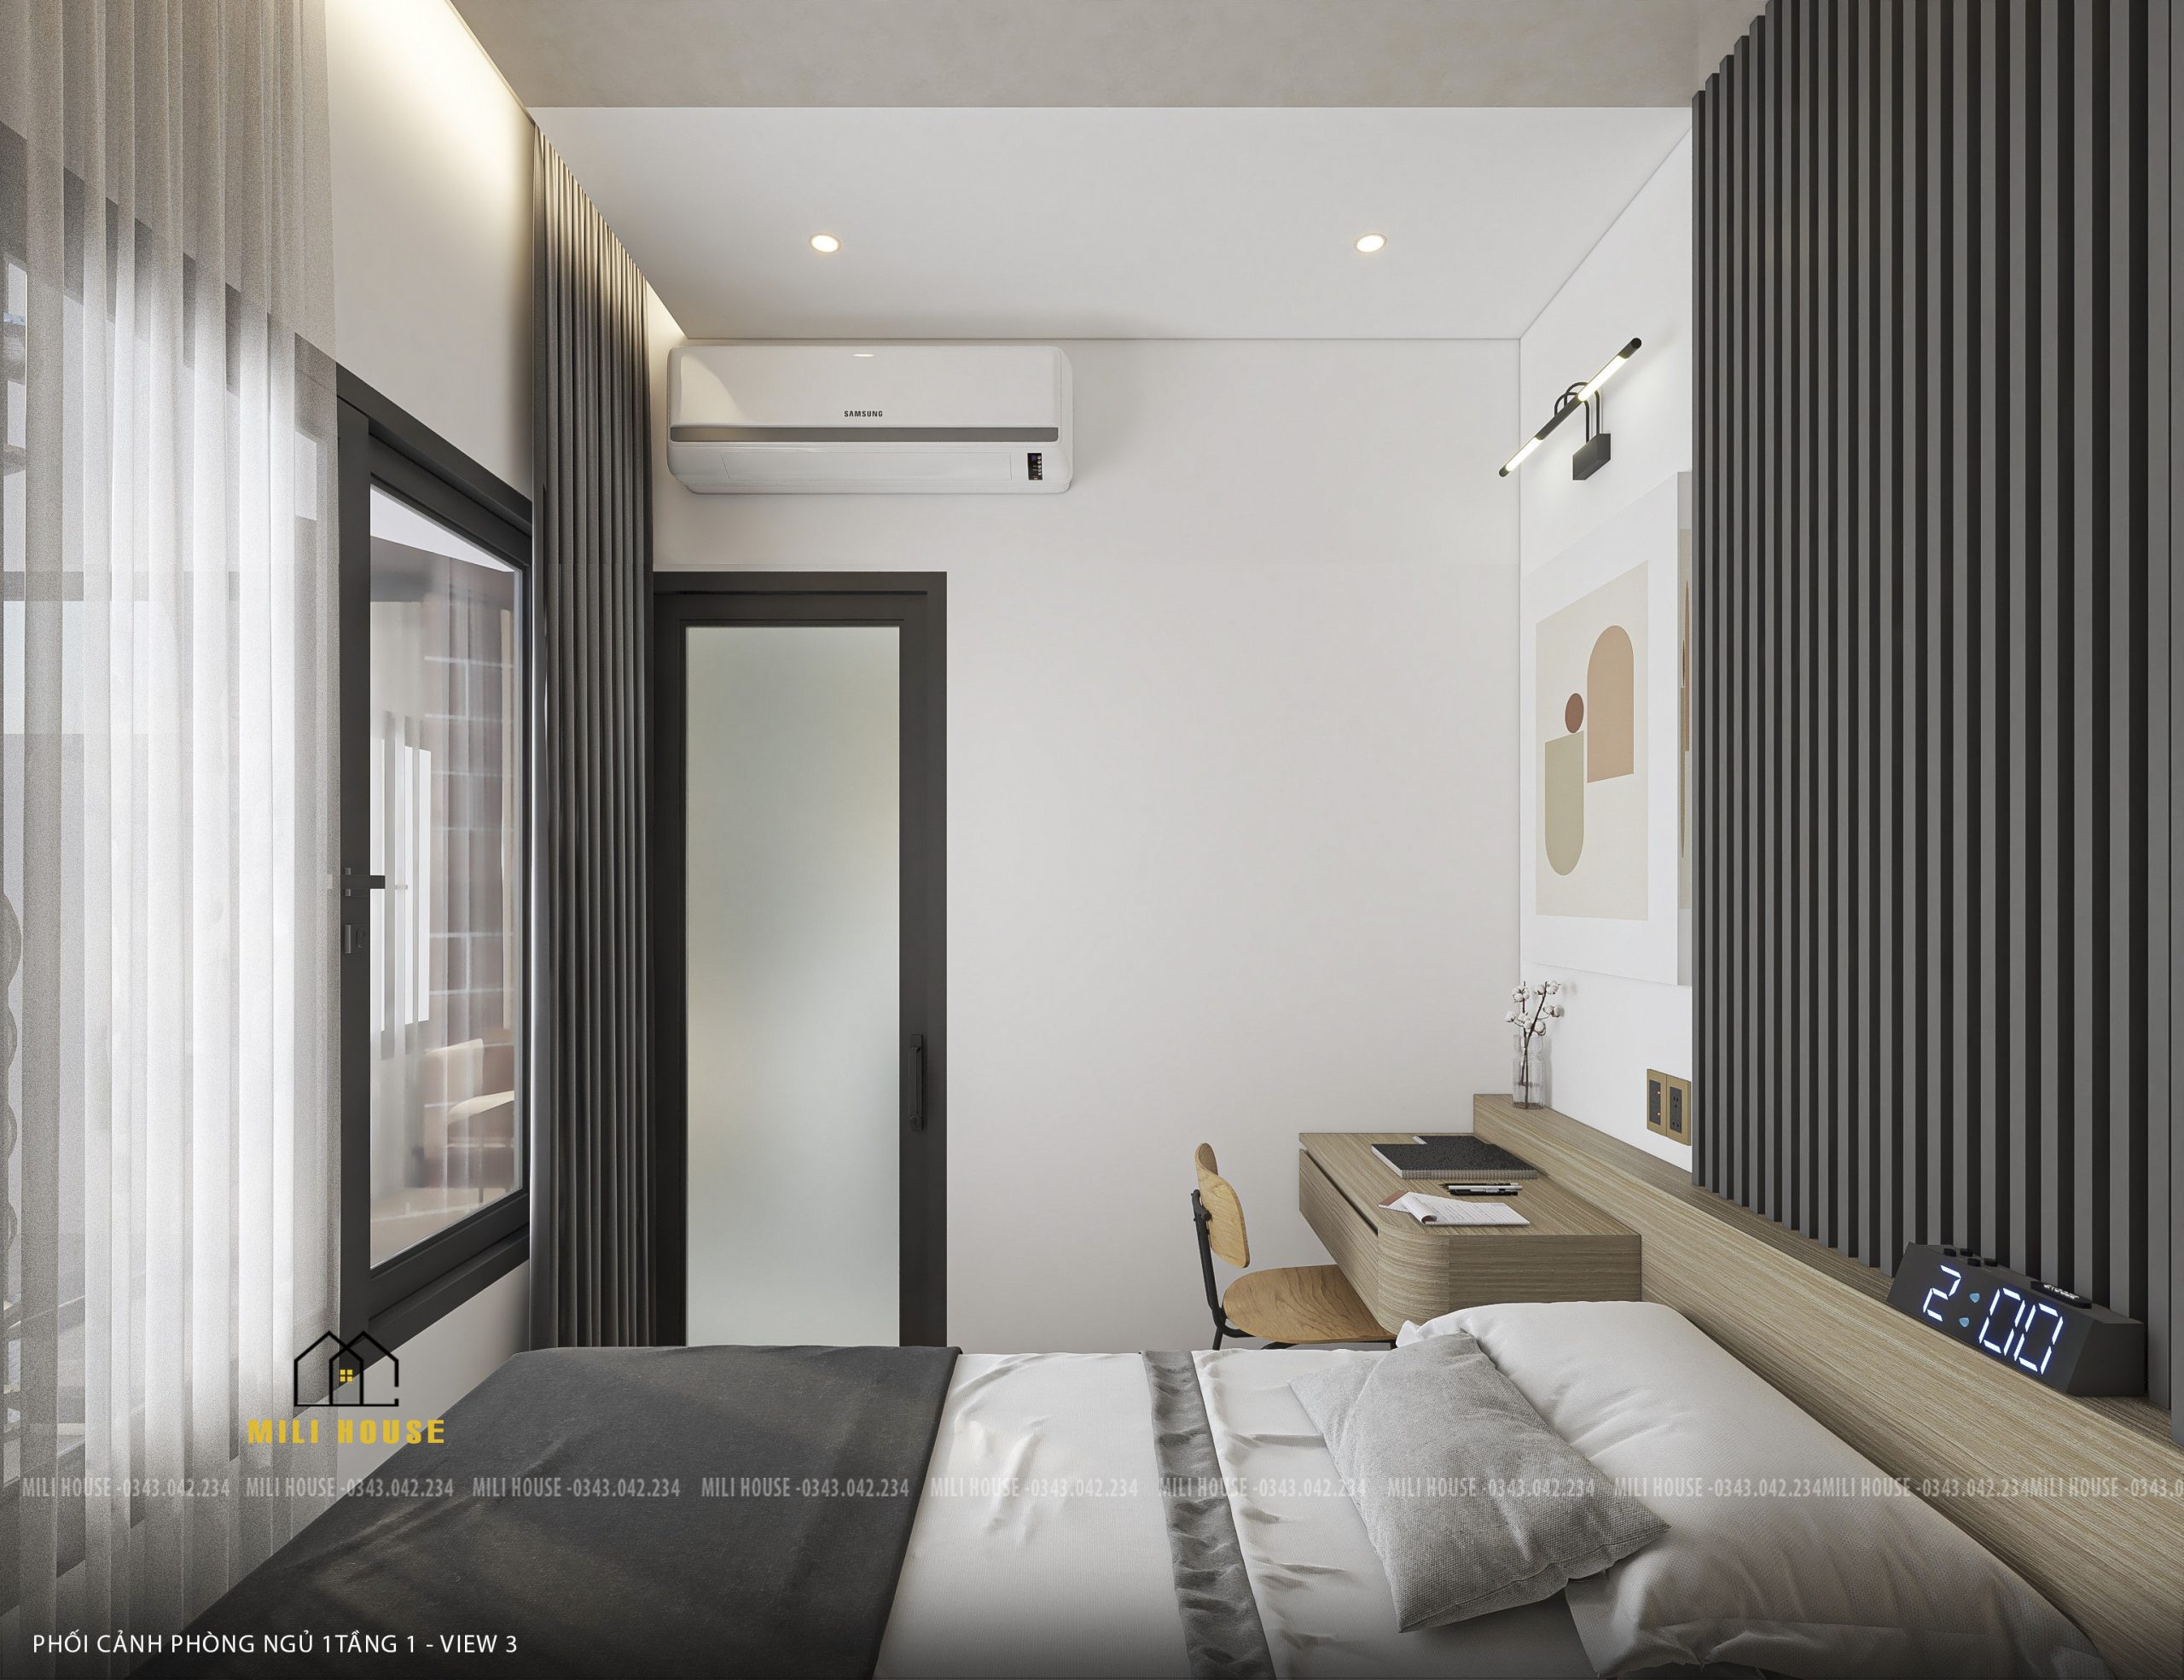 Thiết kế chung cư Đà Nẵng – Đơn vị thiết kế uy tín giá rẻ